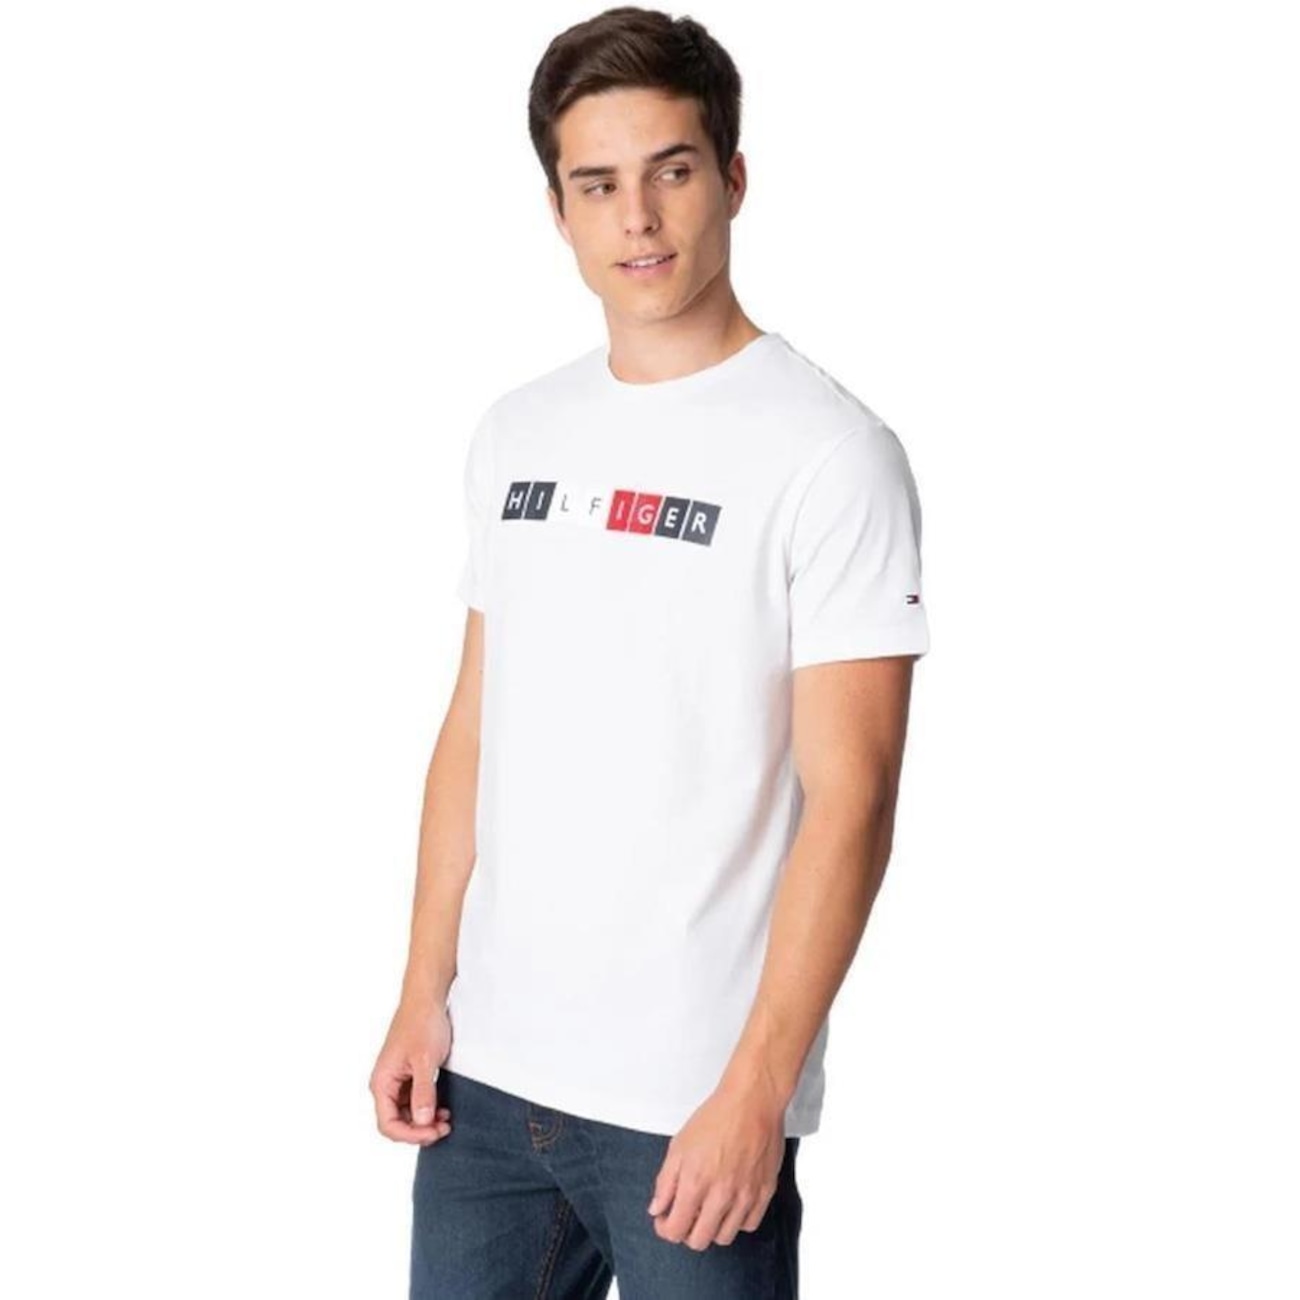 Camiseta Tommy Hilfiger Wcc Essential Ctn - Masculina - Faz a Boa!